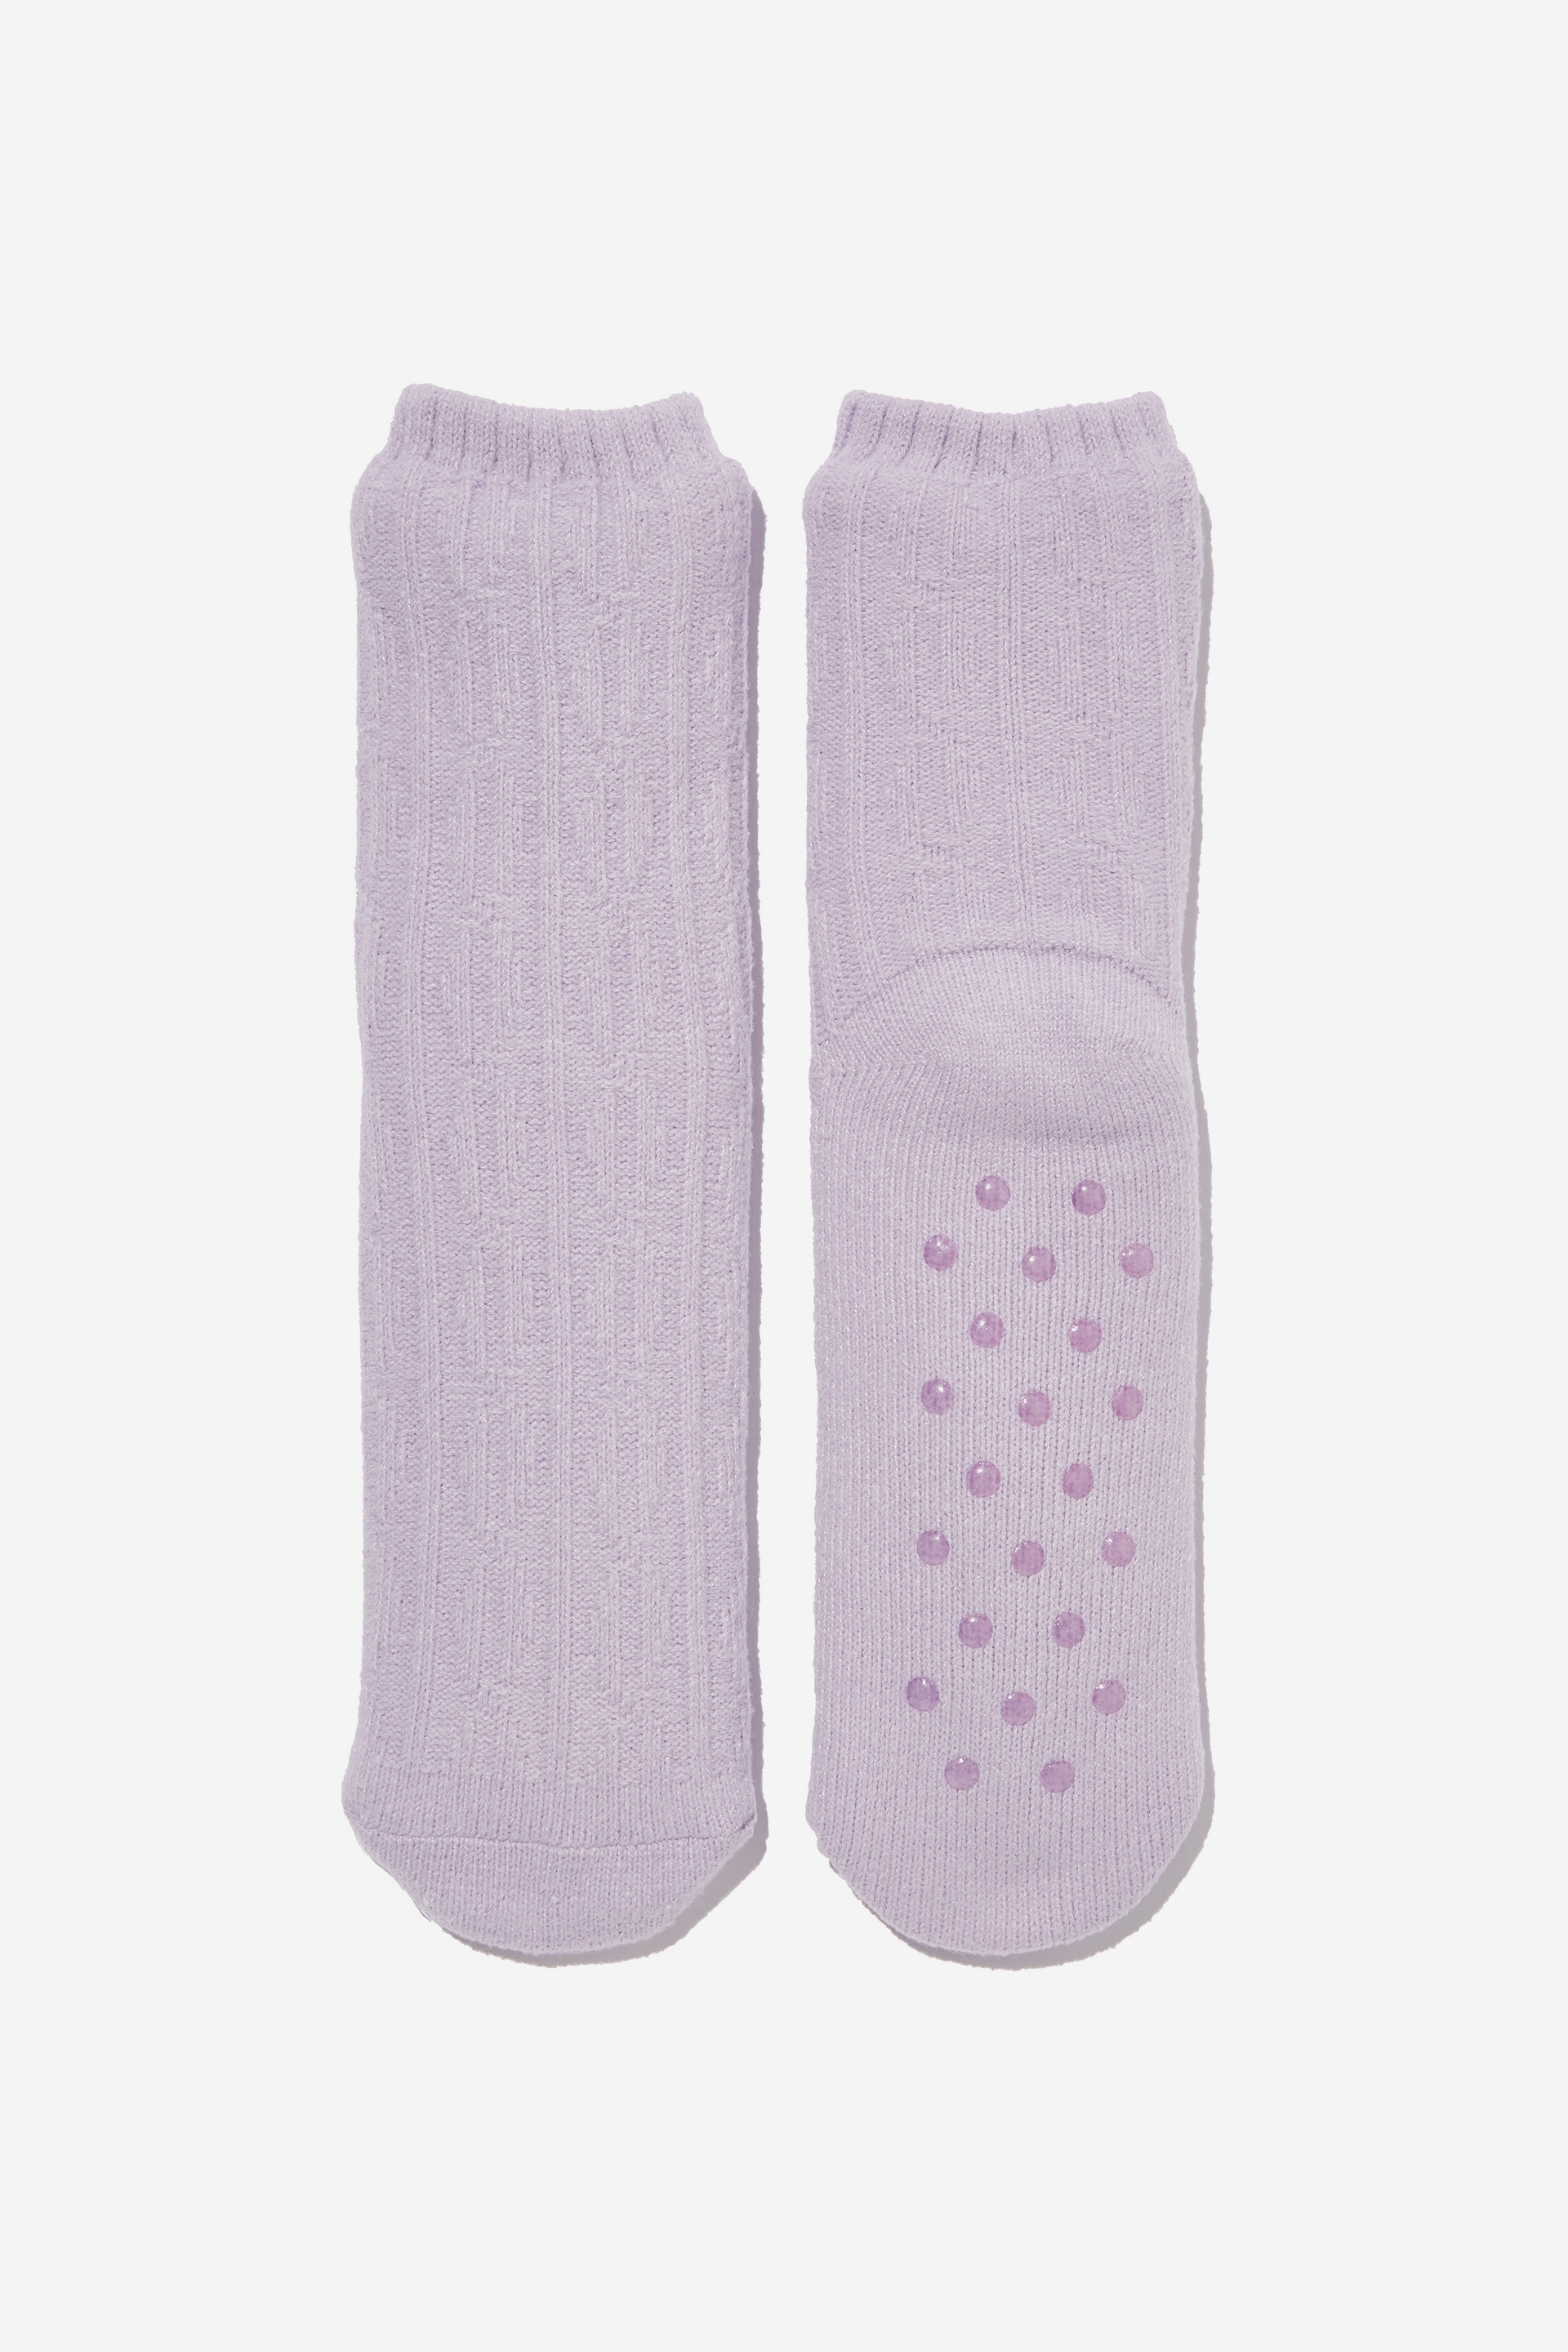 Rubi - Loungin Sock - Lilac